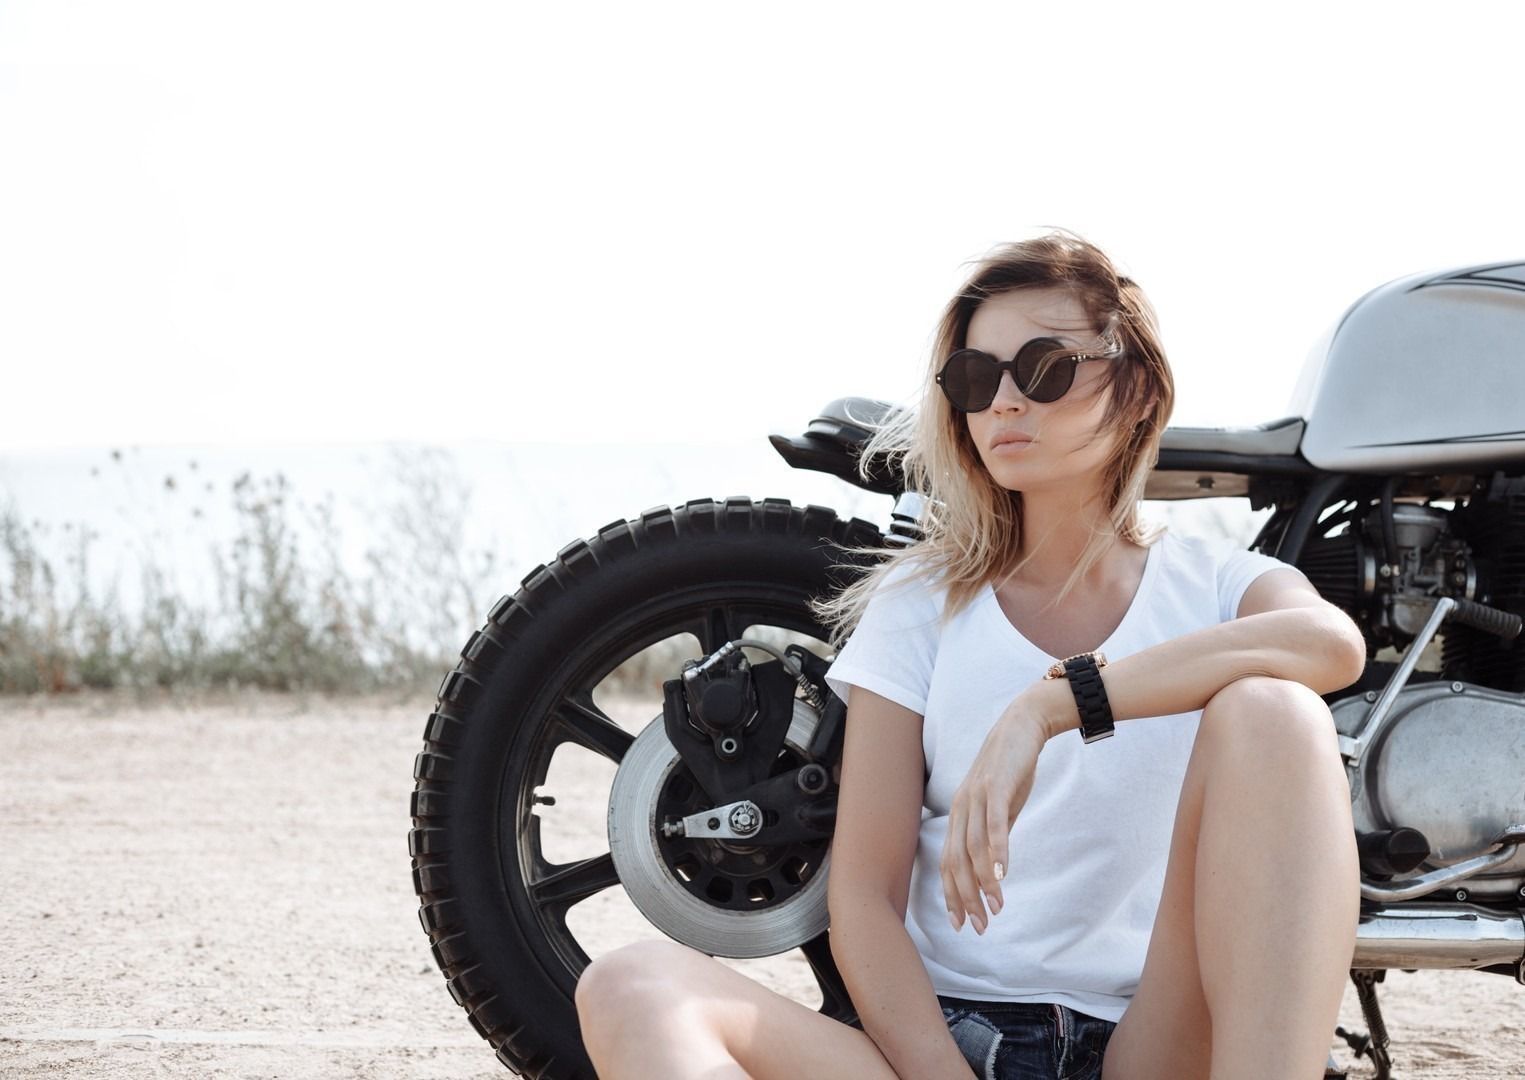 Biker girl and vintage custom motorcycle